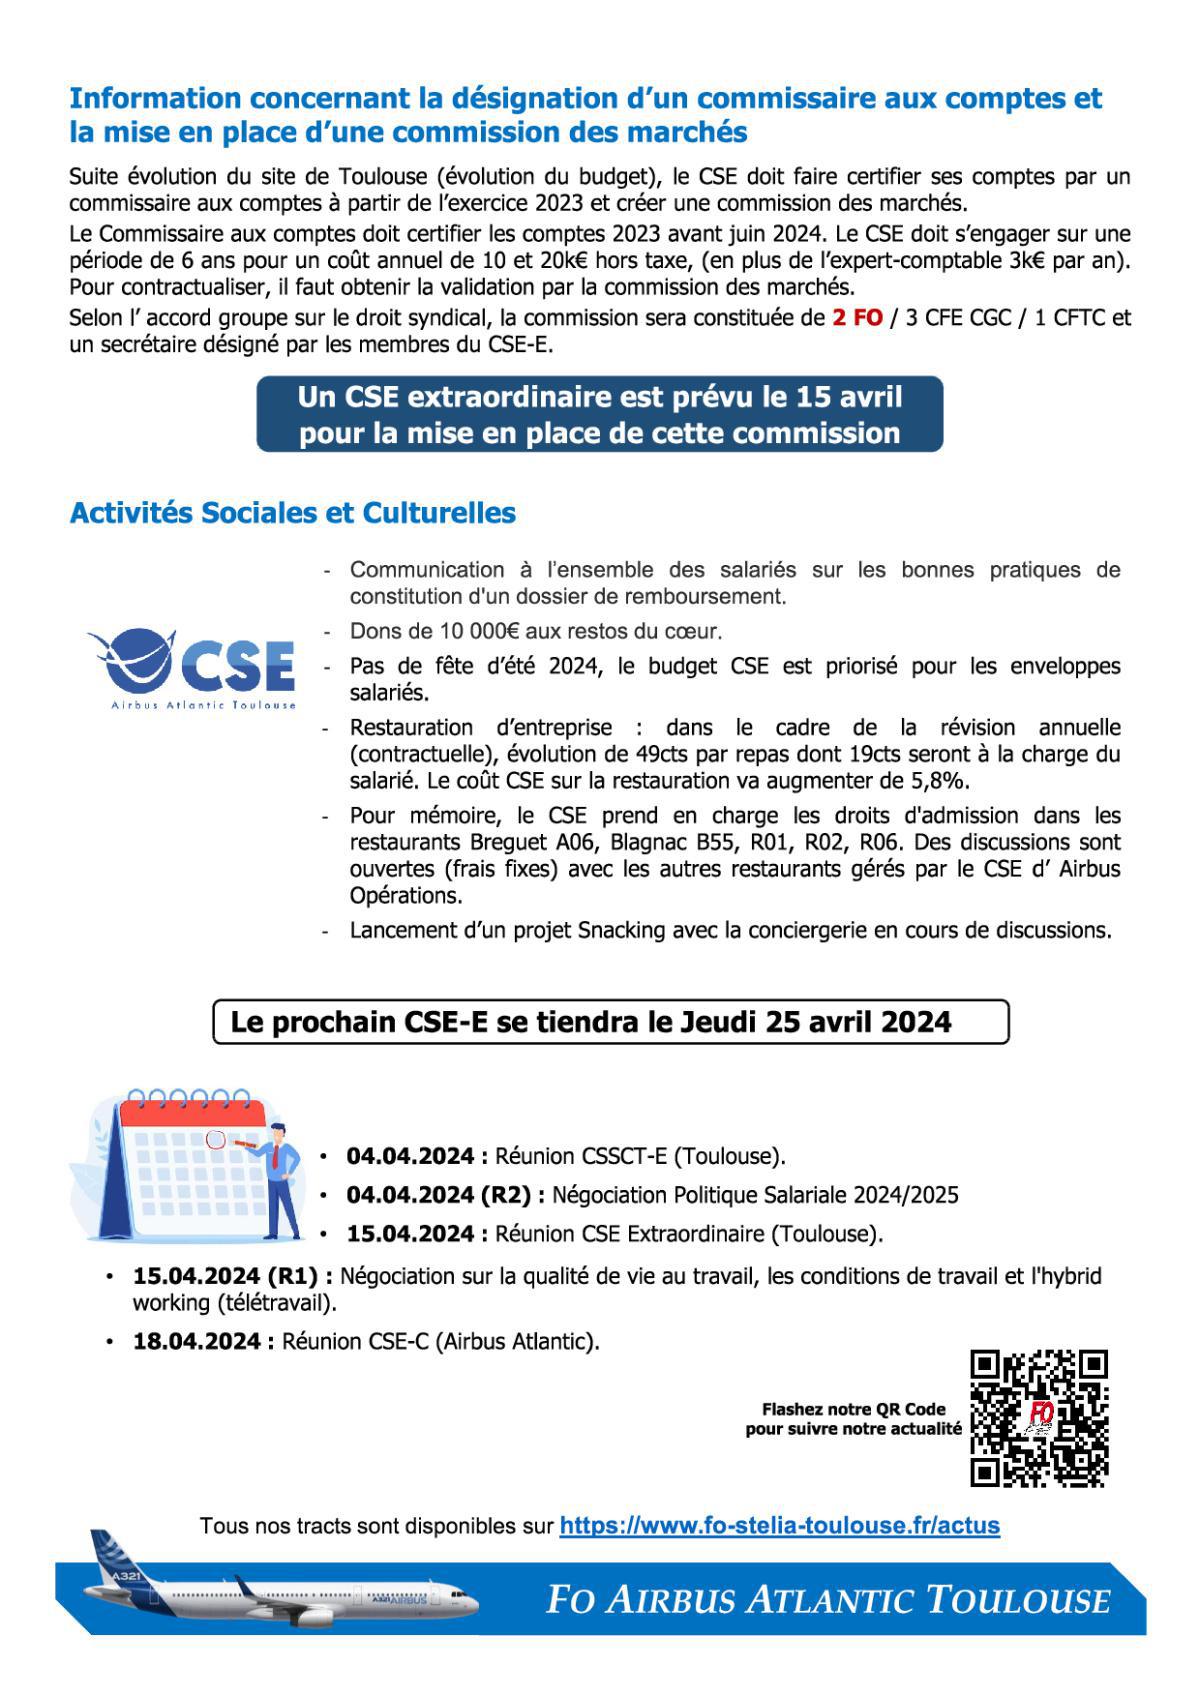 Flash Info : Compte Rendu Partiel du CSE-E du 28 mars 2024